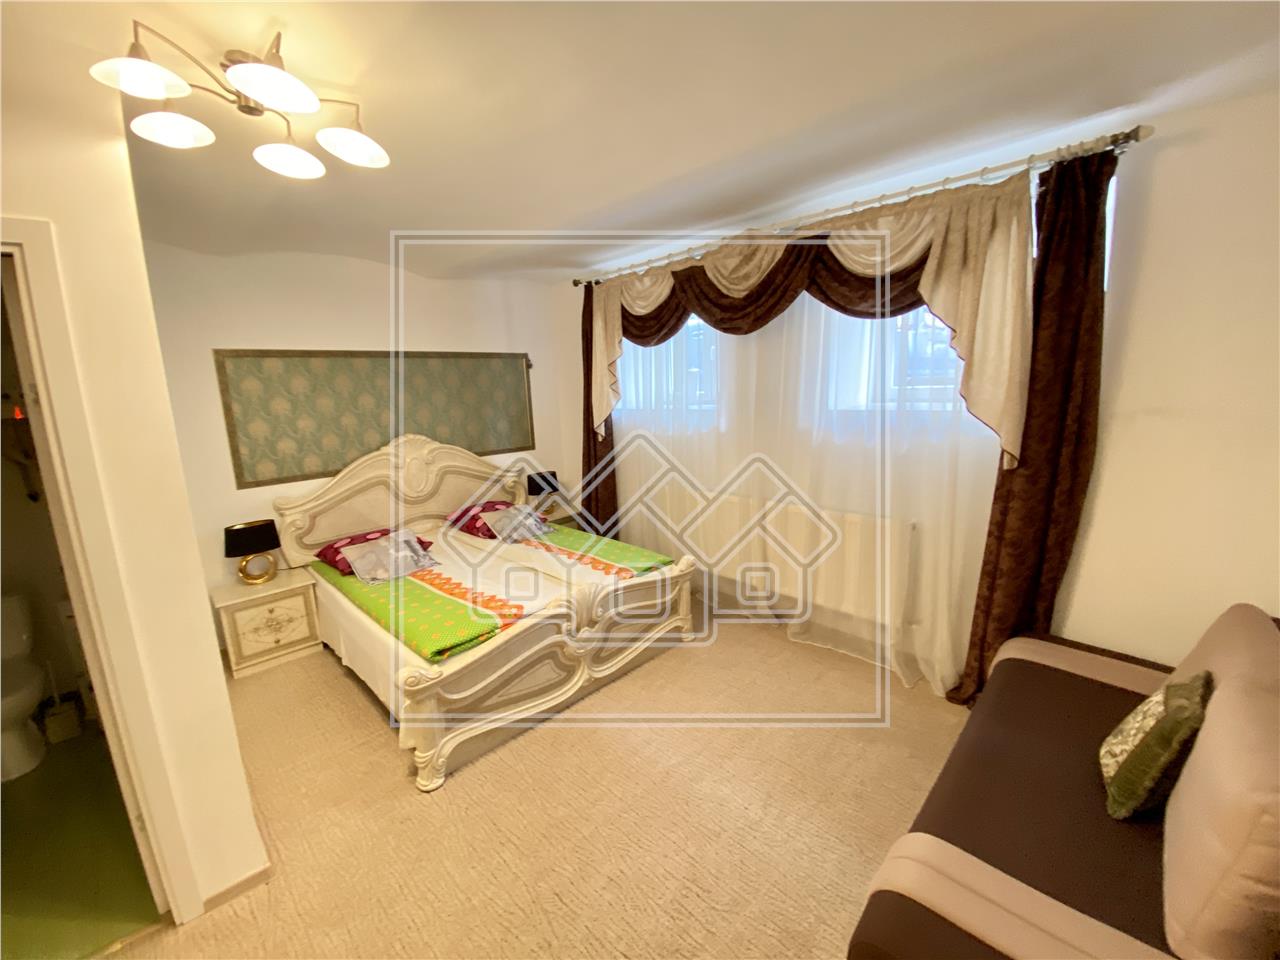 Wohnung zu vermieten in Sibiu - zentraler Bereich - 2 Zimmer - 2 Badez